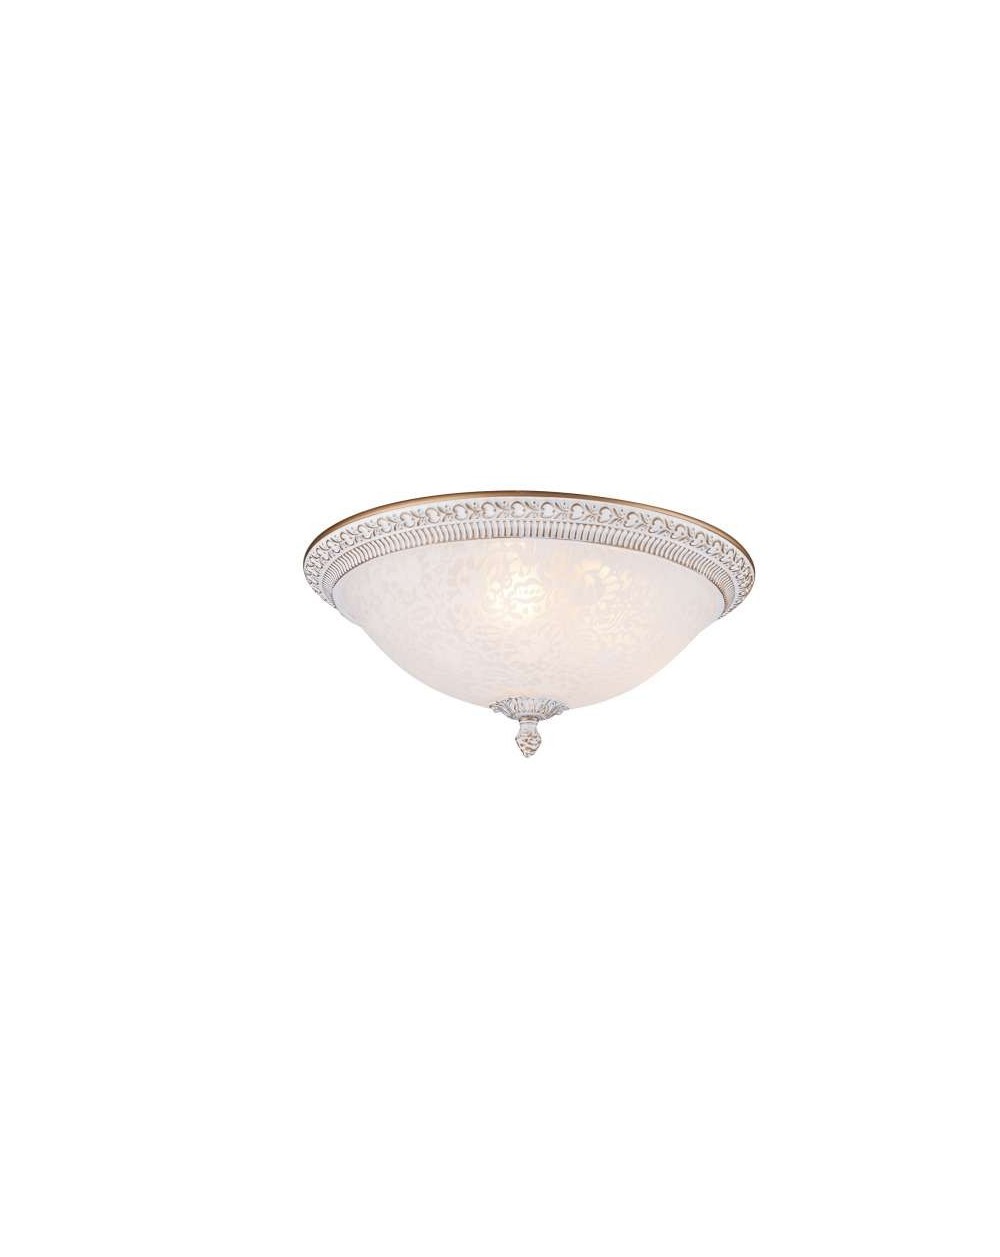 Lampa sufitowa PASCAL Maytoni stylowy plafon klasyczny biały na sufit lub ścianę